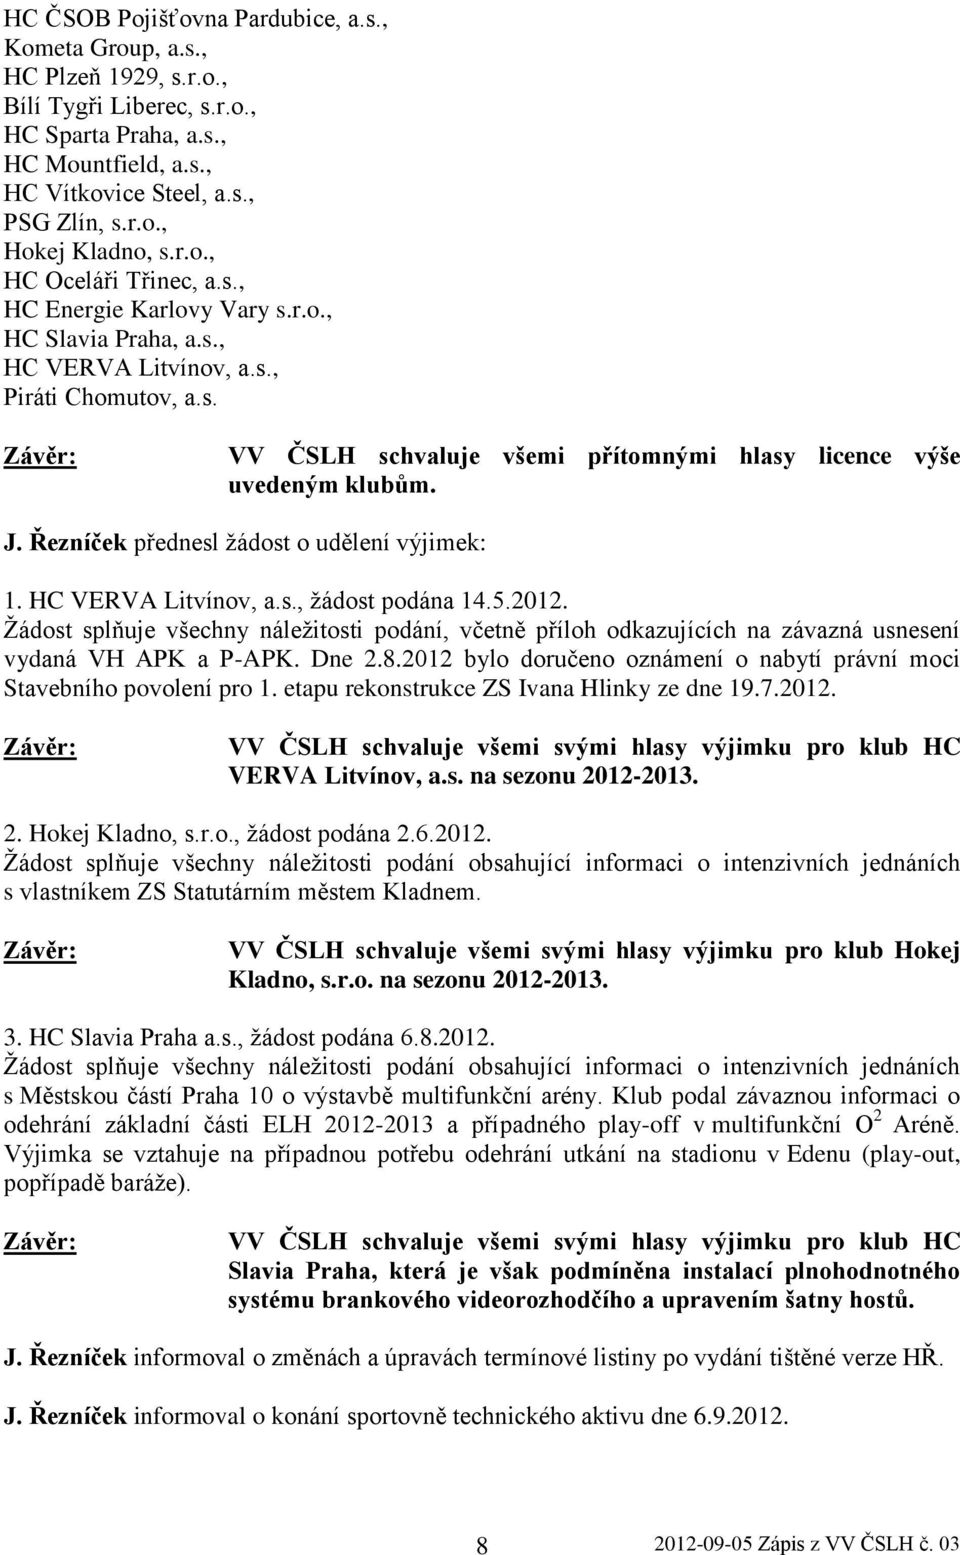 J. Řezníček přednesl žádost o udělení výjimek: 1. HC VERVA Litvínov, a.s., žádost podána 14.5.2012.